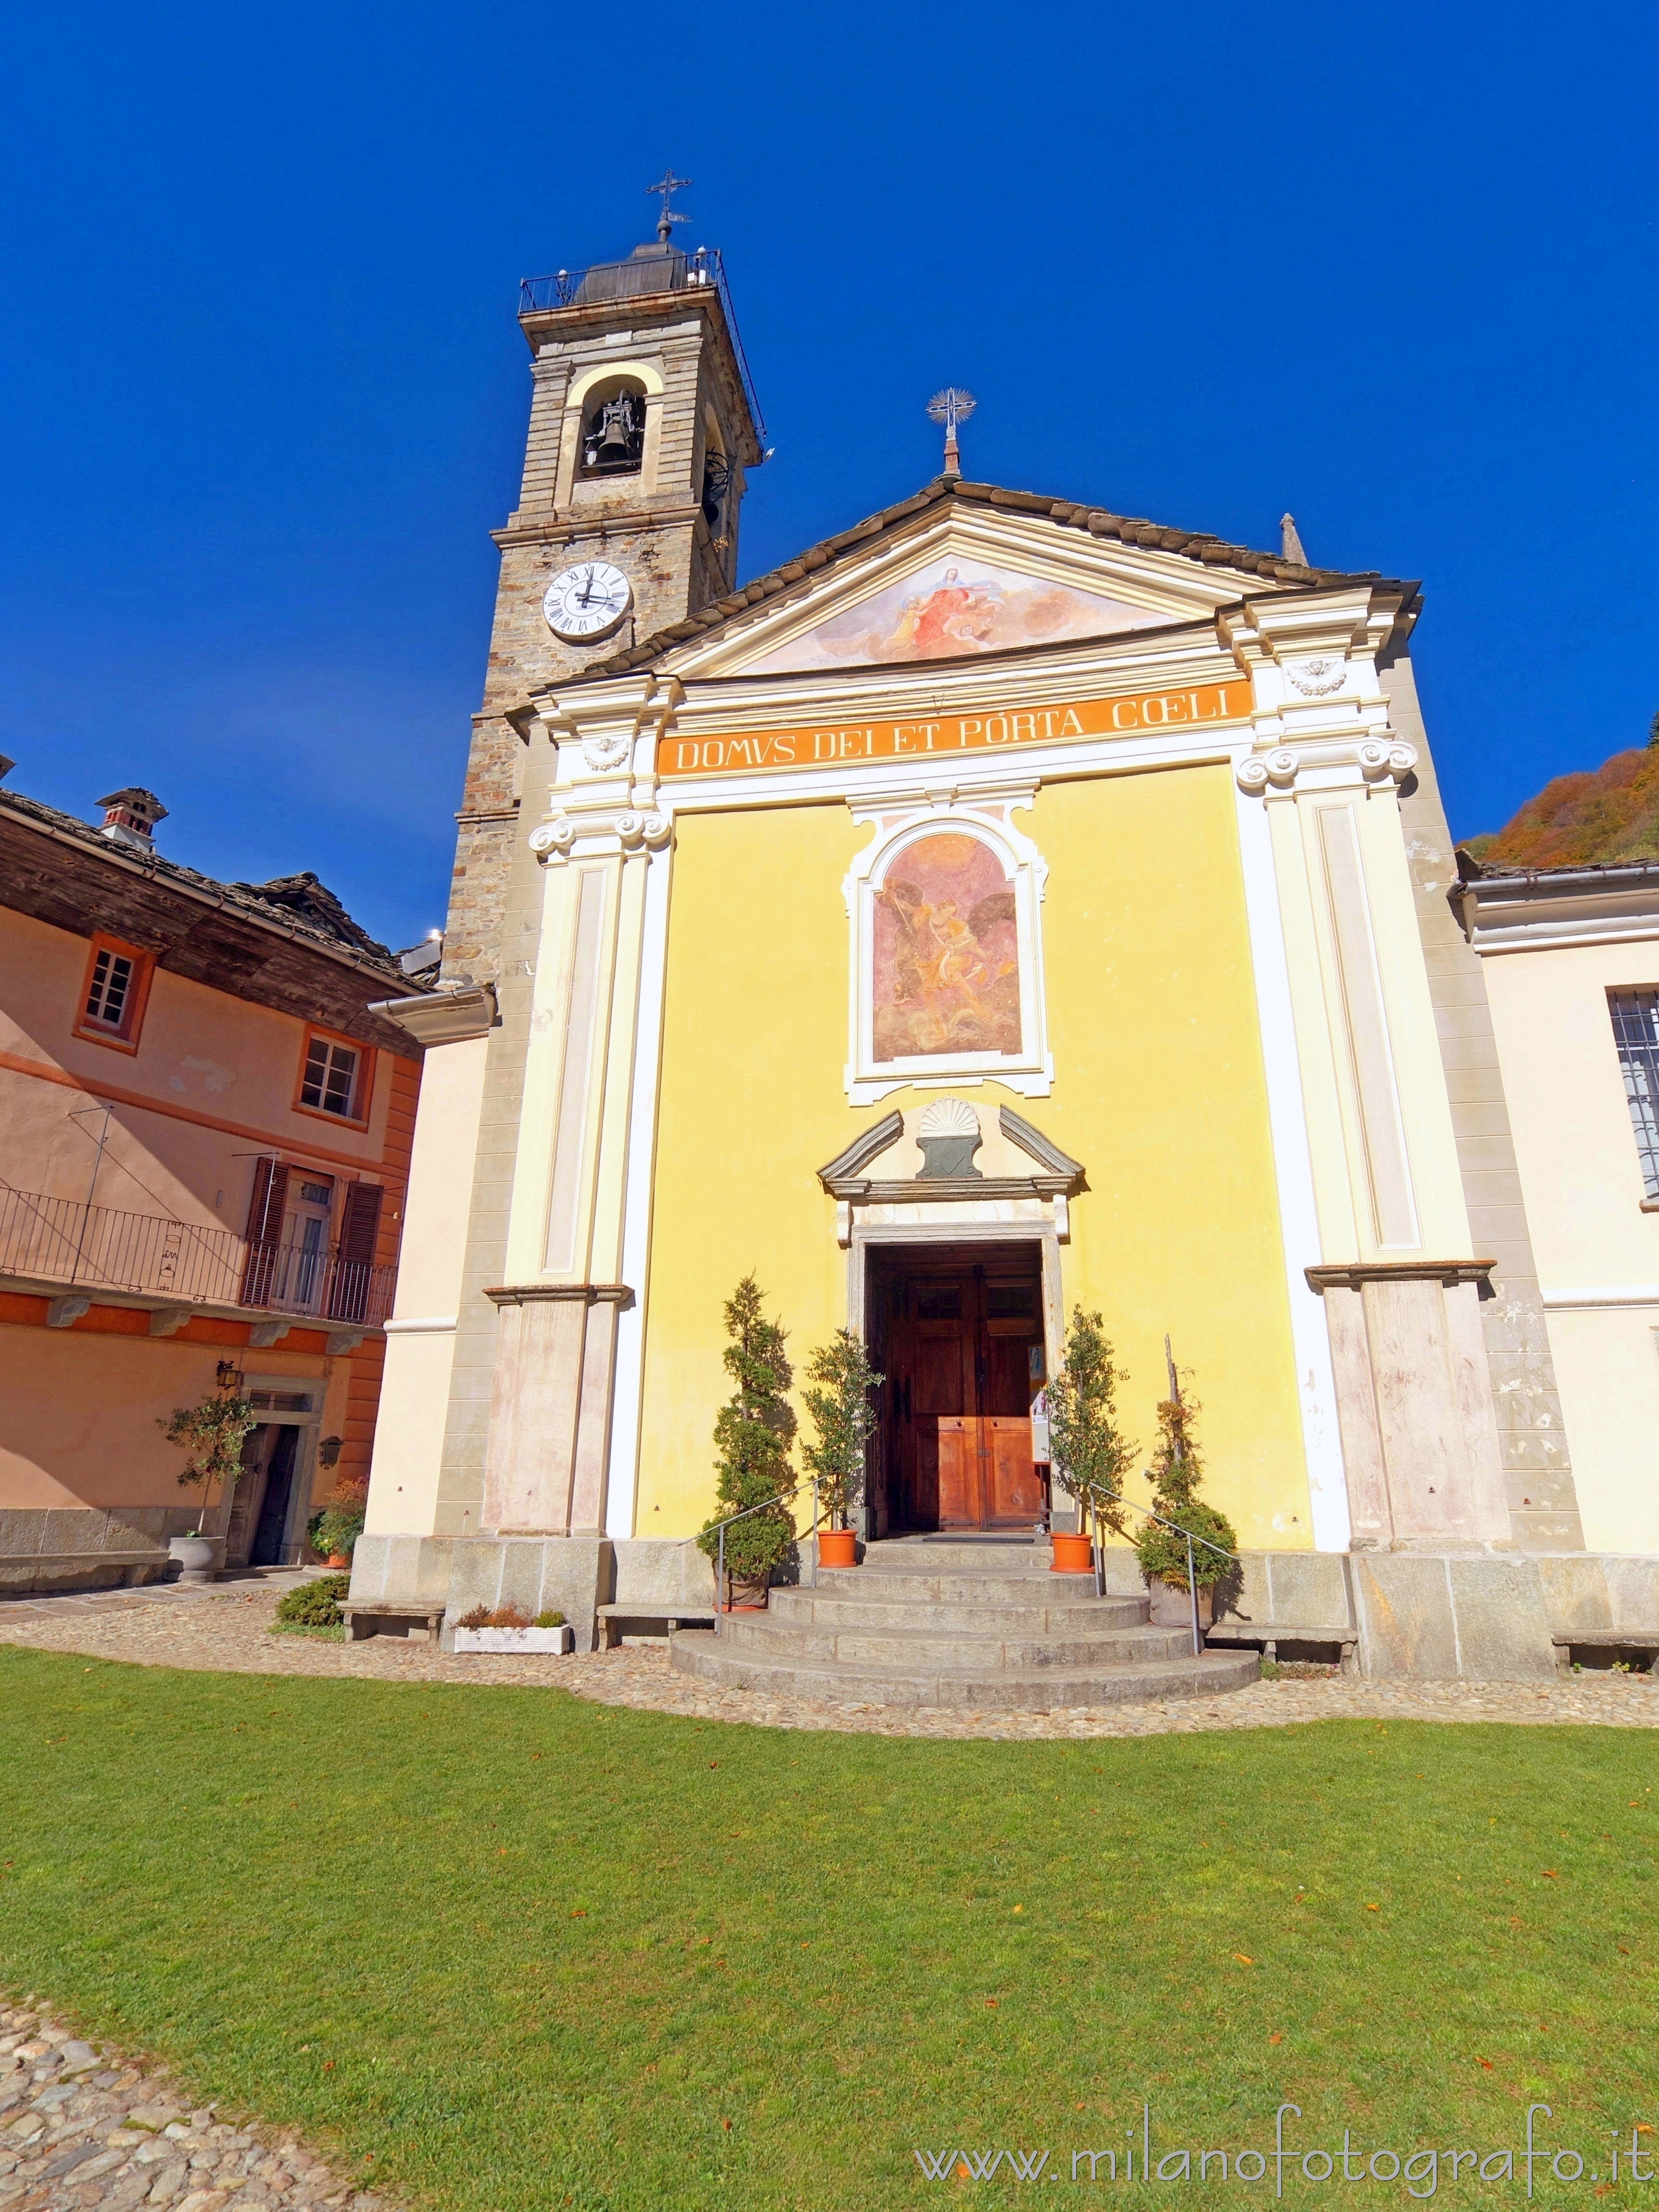 Piedicavallo (Biella, Italy): Church of San Michele Archangelo - Piedicavallo (Biella, Italy)